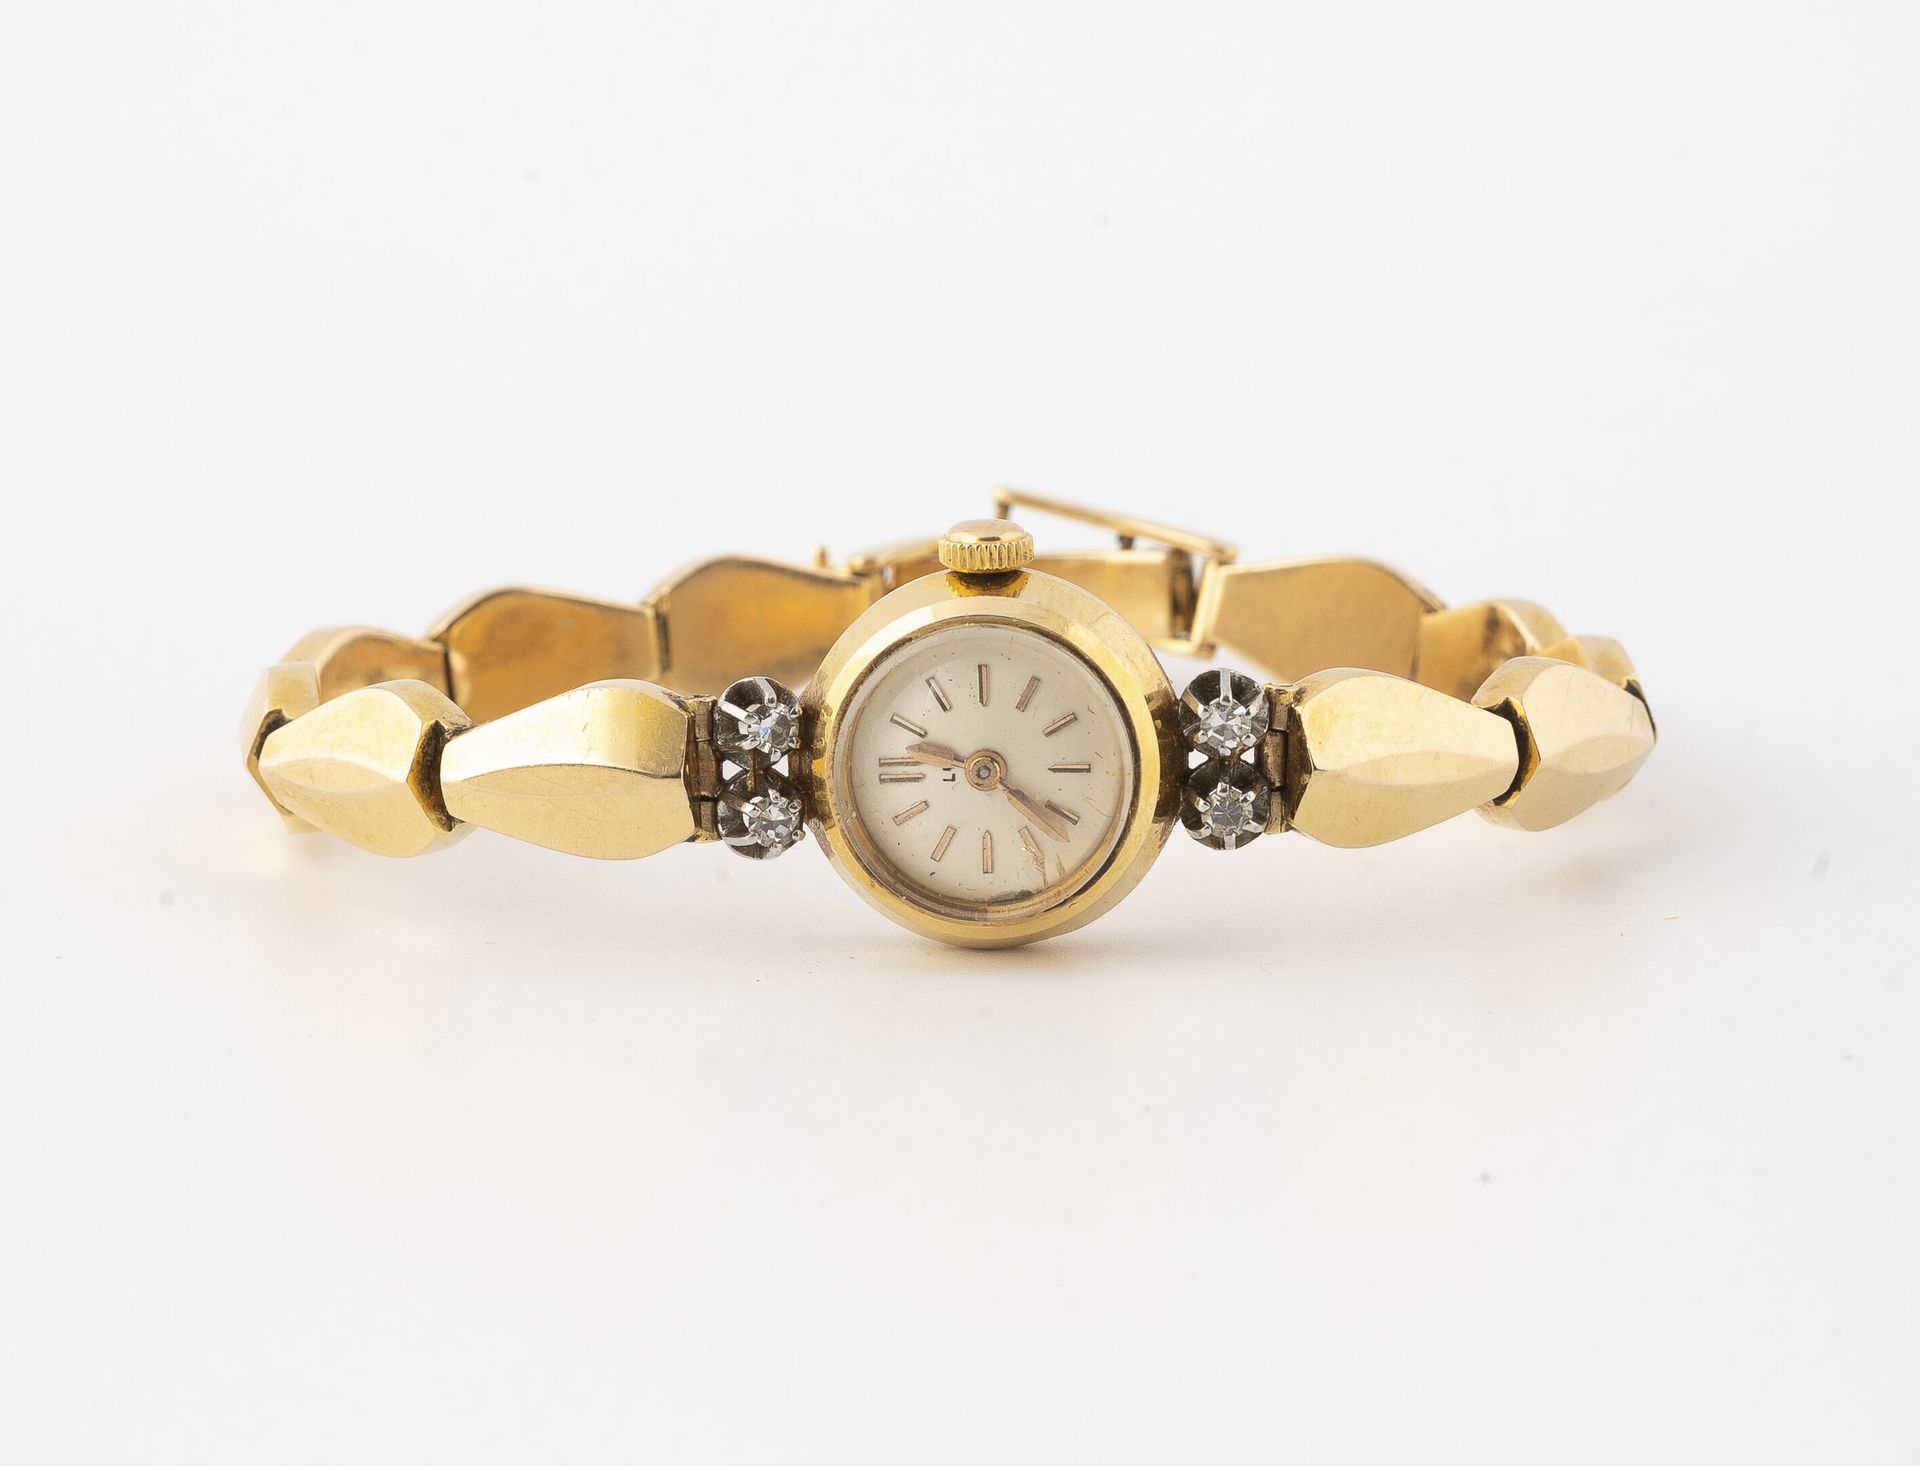 LIP Montre bracelet de dame en or jaune (750).

Boîtier rond, épaulé de quatre p&hellip;